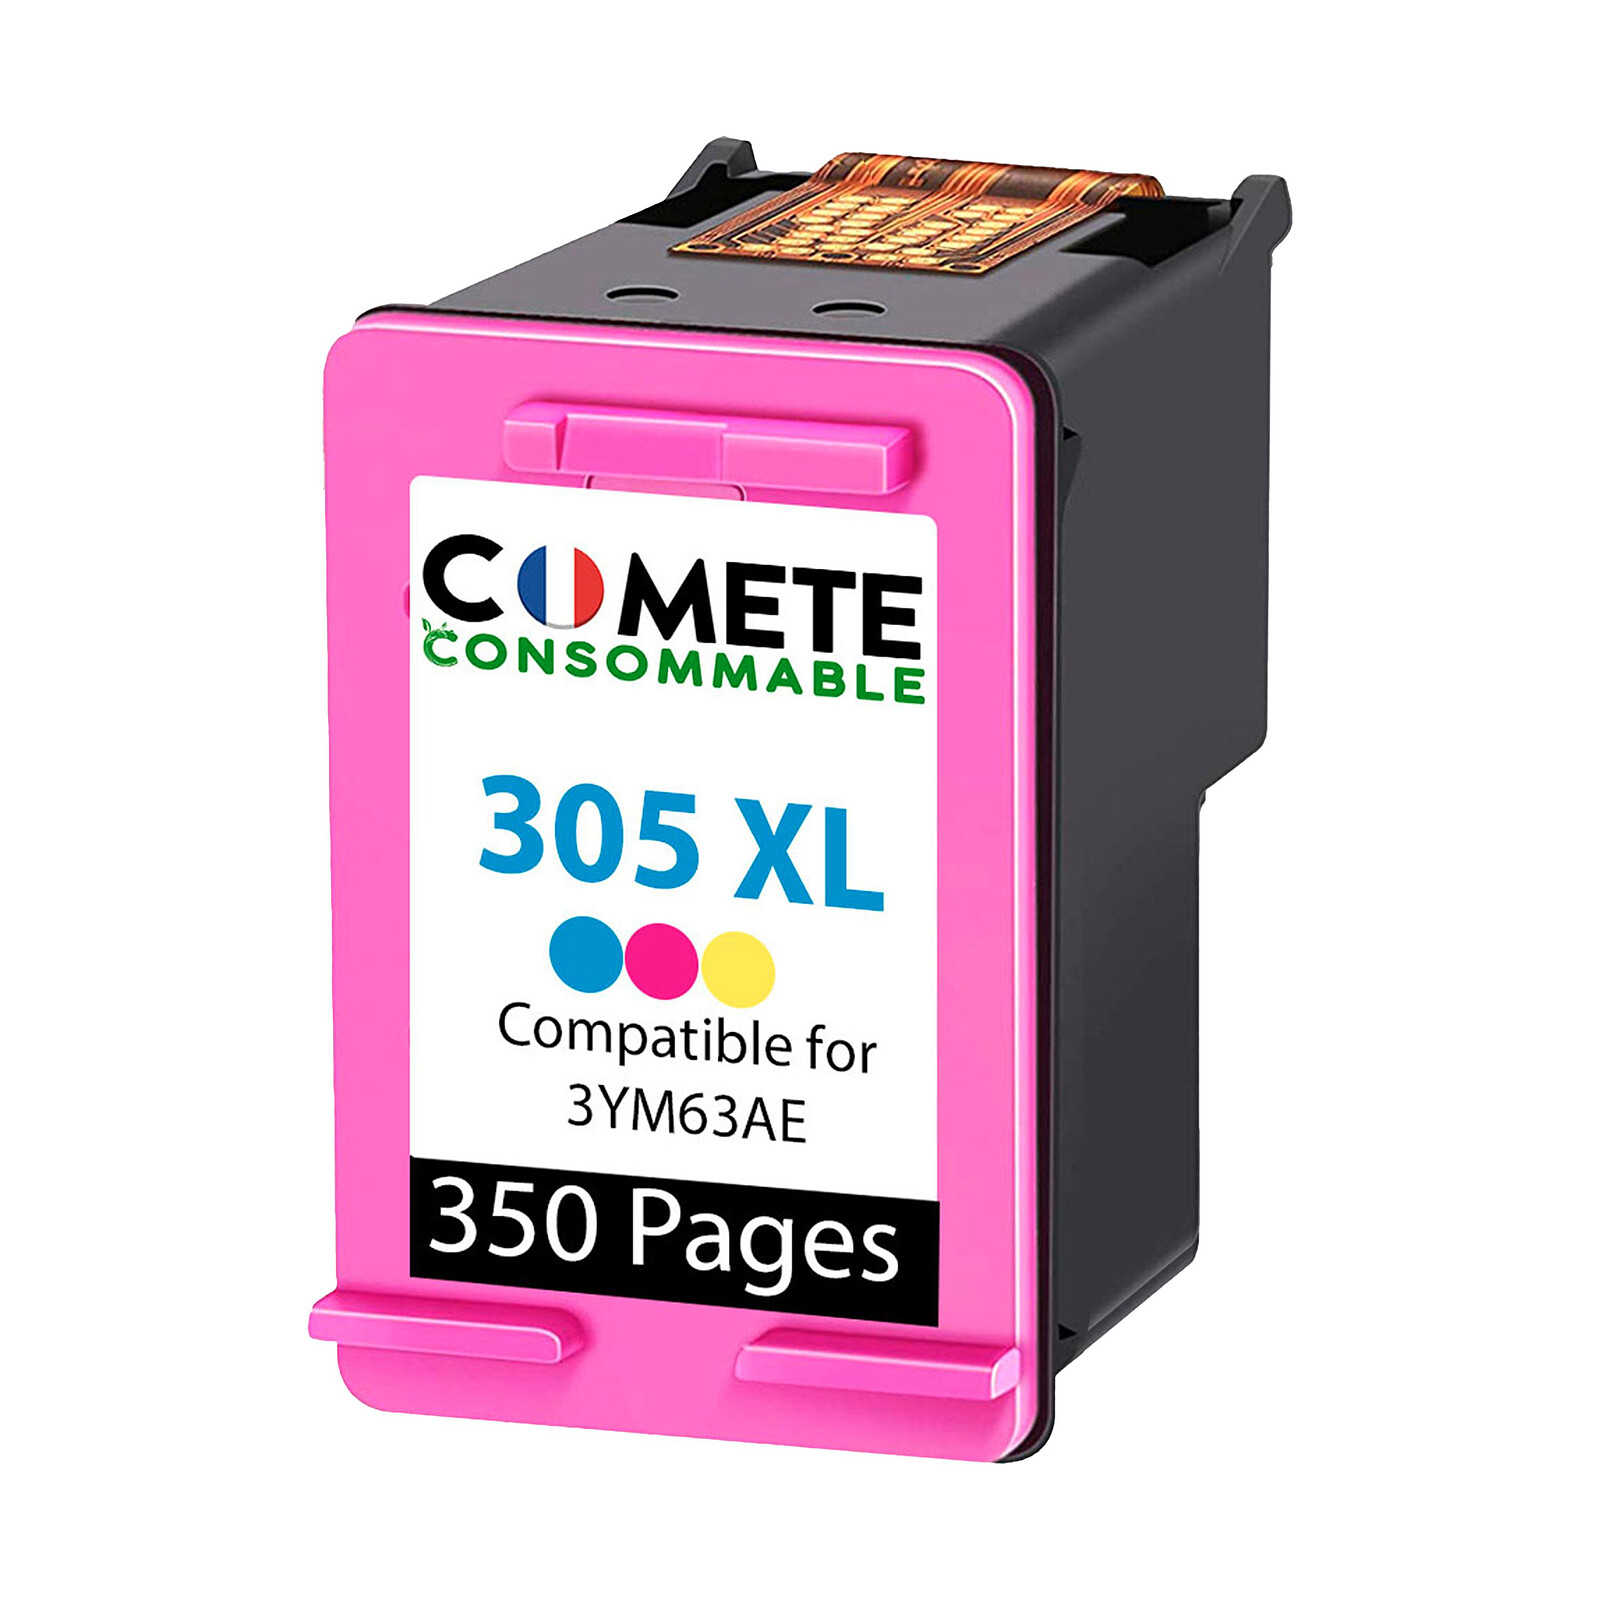 COMETE - 305XL - 1 cartouche compatible 305 XL pour Imprimante HP - Couleur  - Marque française - Cartouche imprimante - LDLC